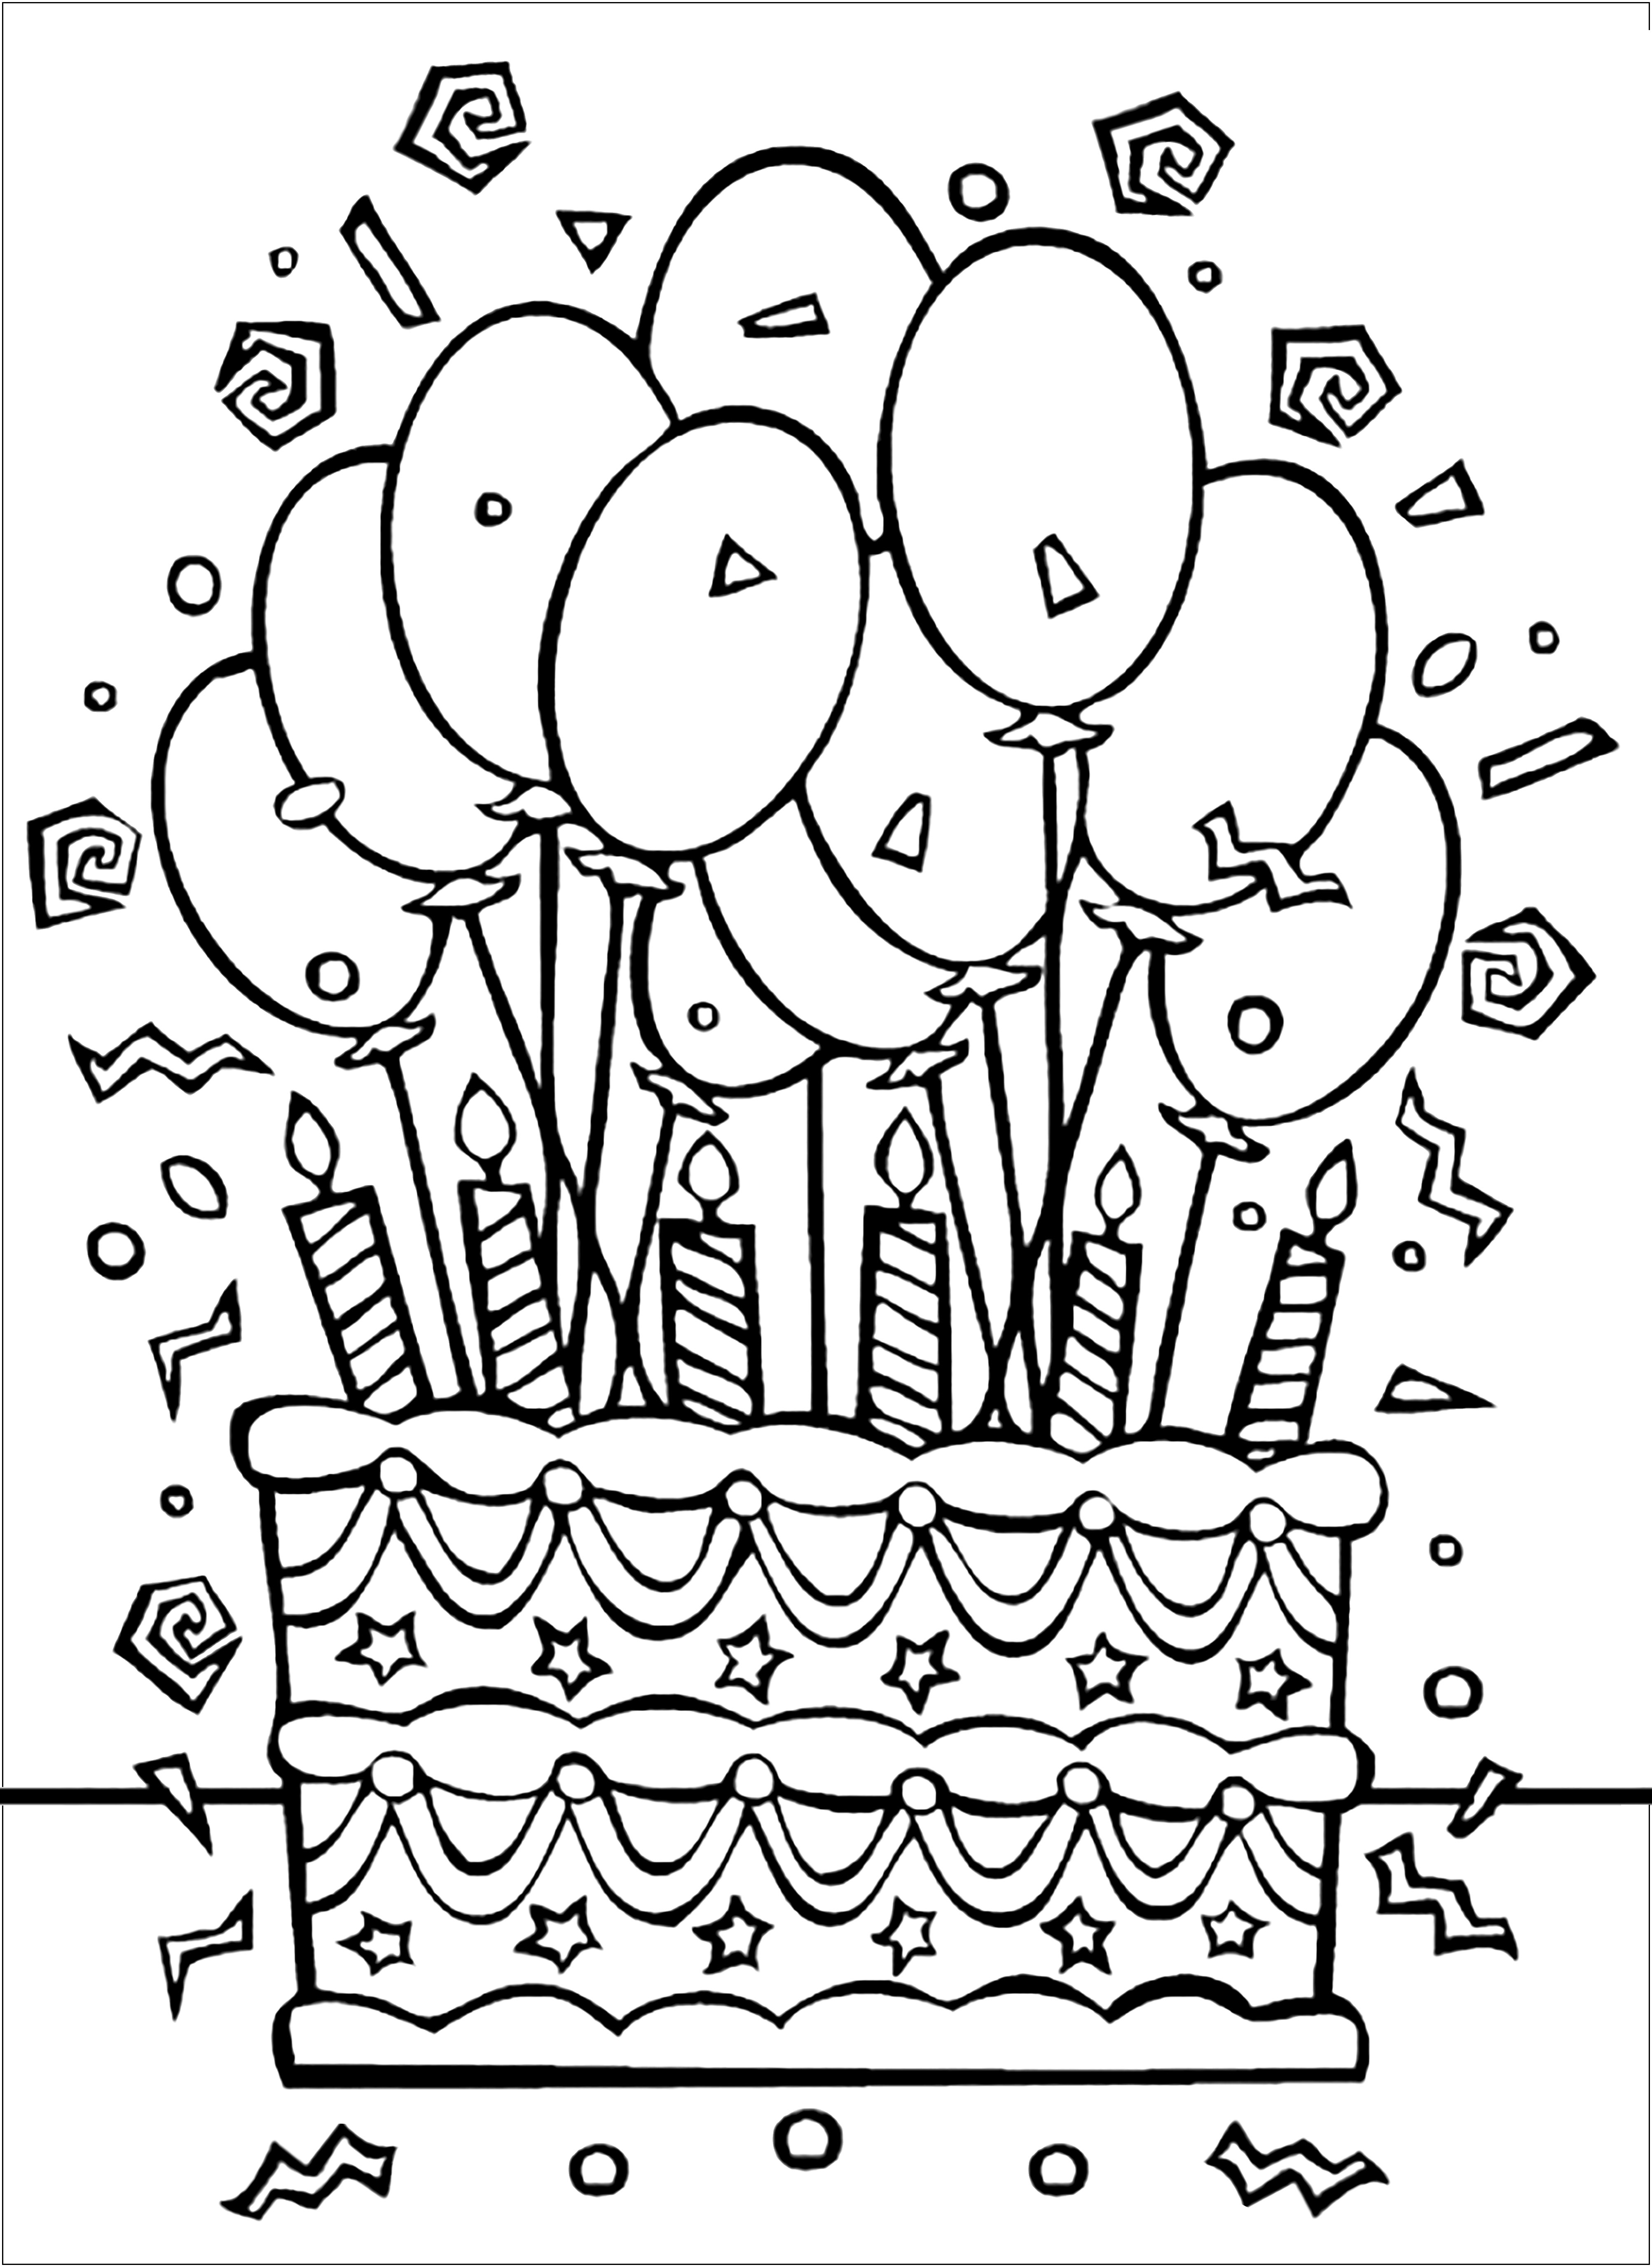 Tarta de cumpleaños y muchos globos. ¡Va a ser una fiesta de cumpleaños salvaje!